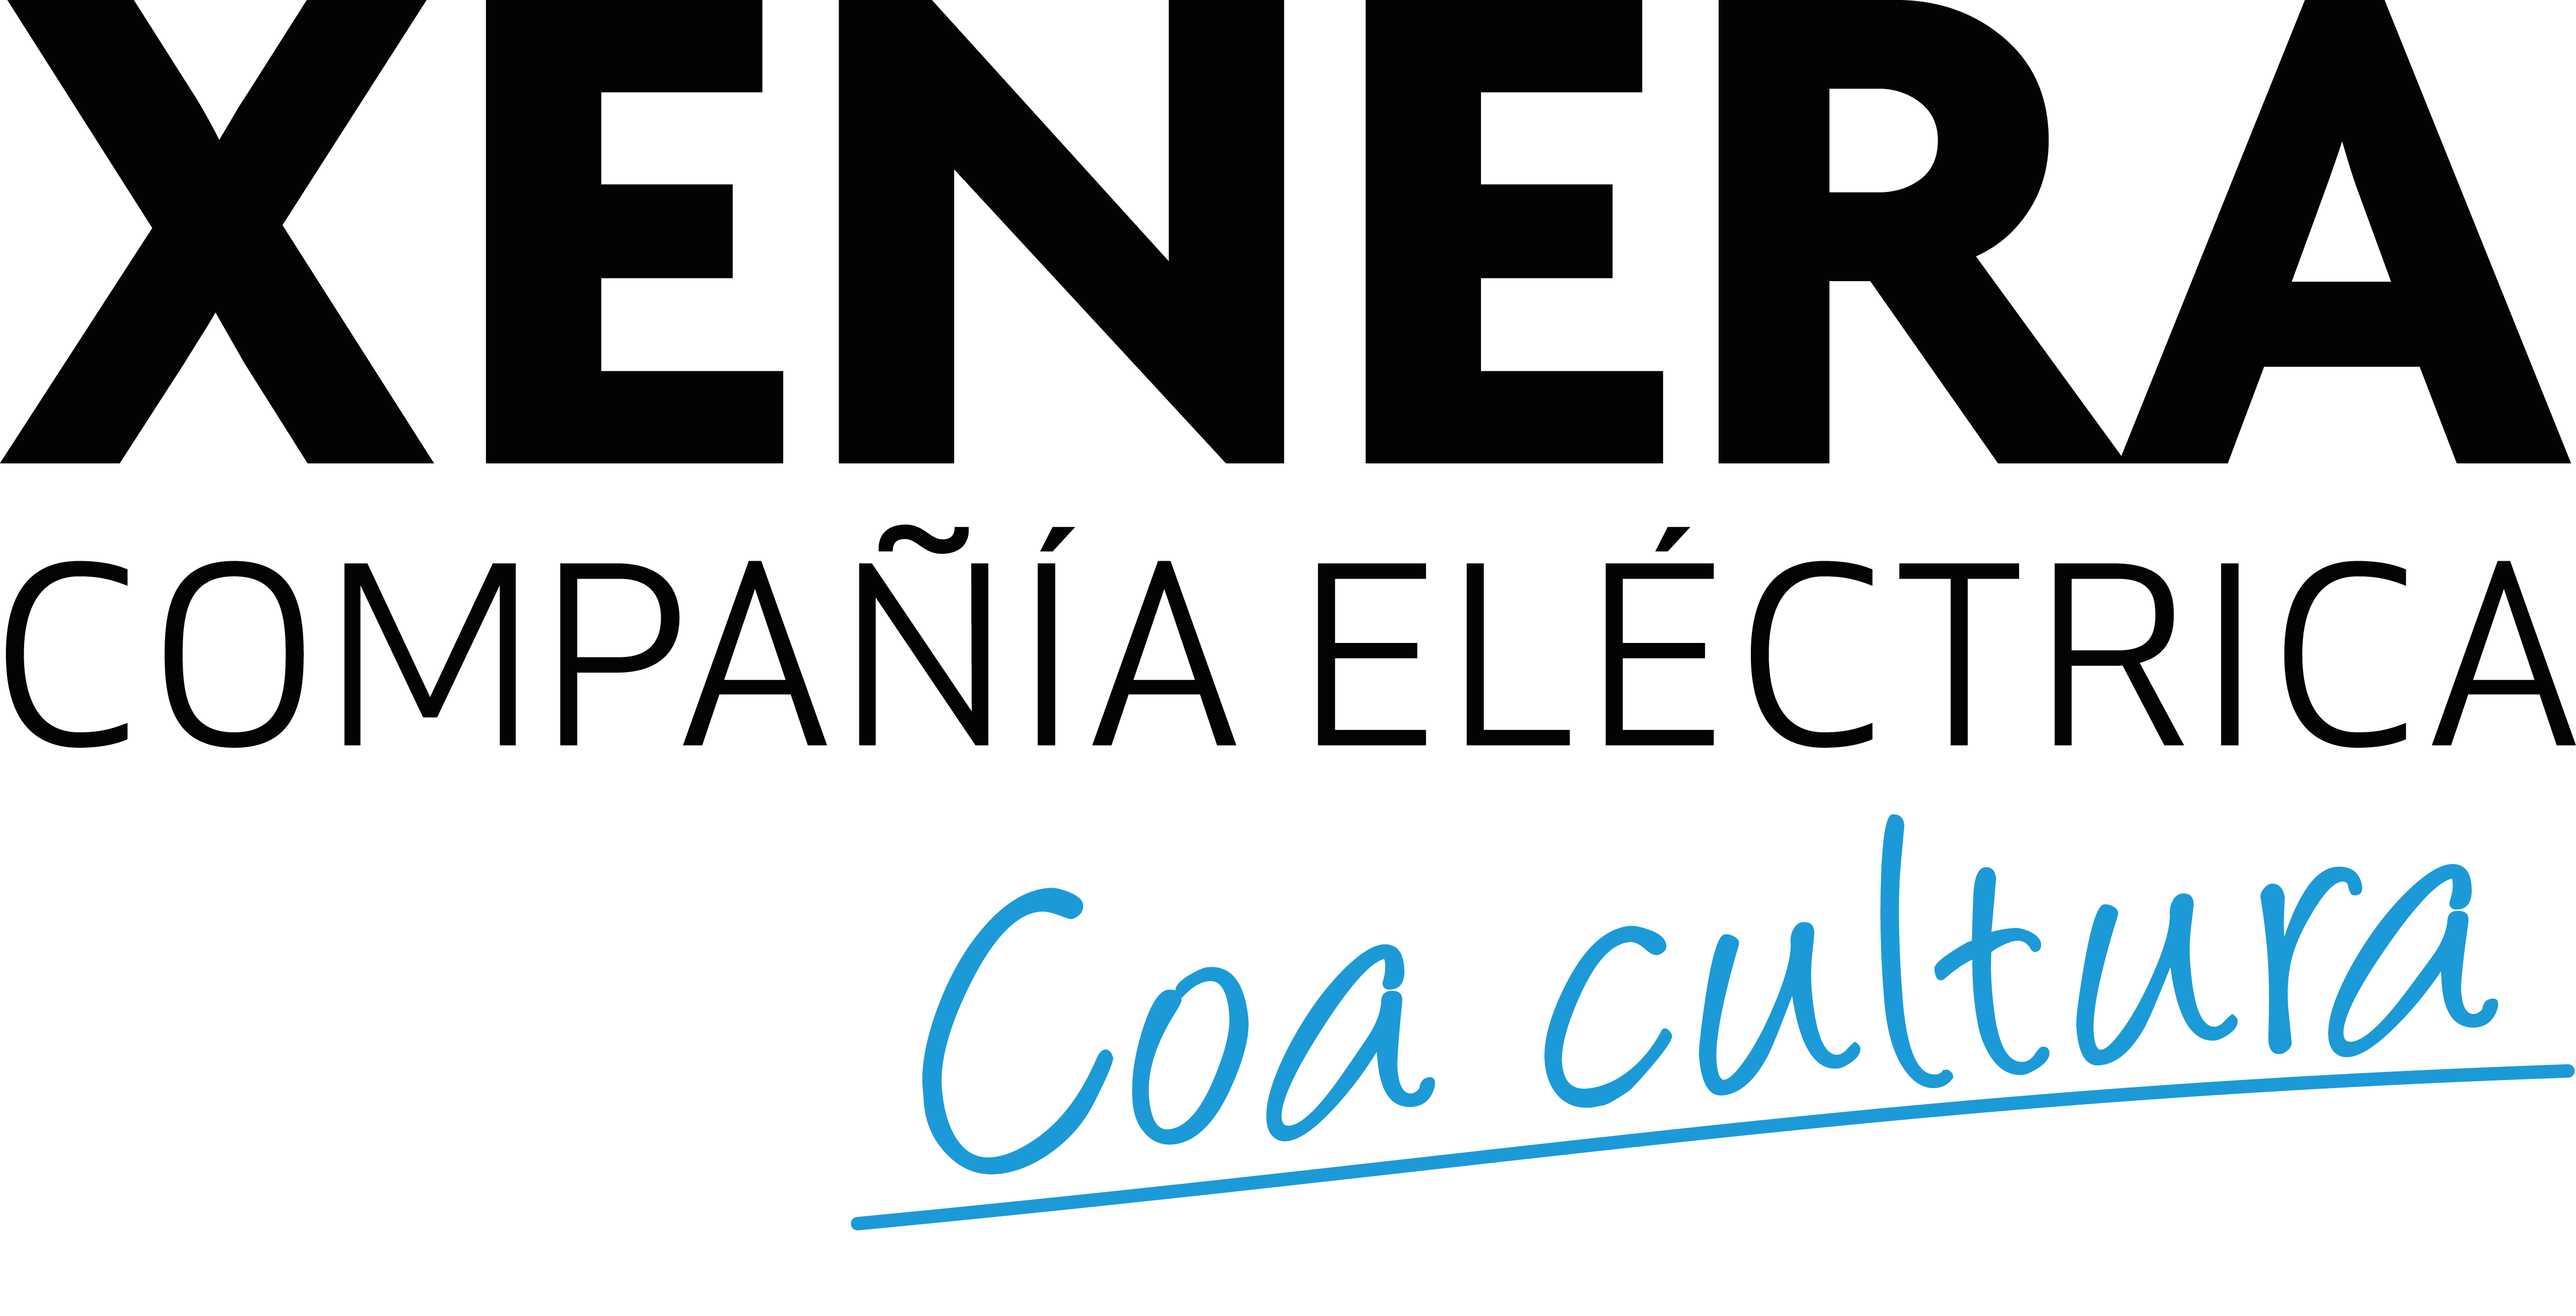 XENERA Compañía Eléctrica coa cultura